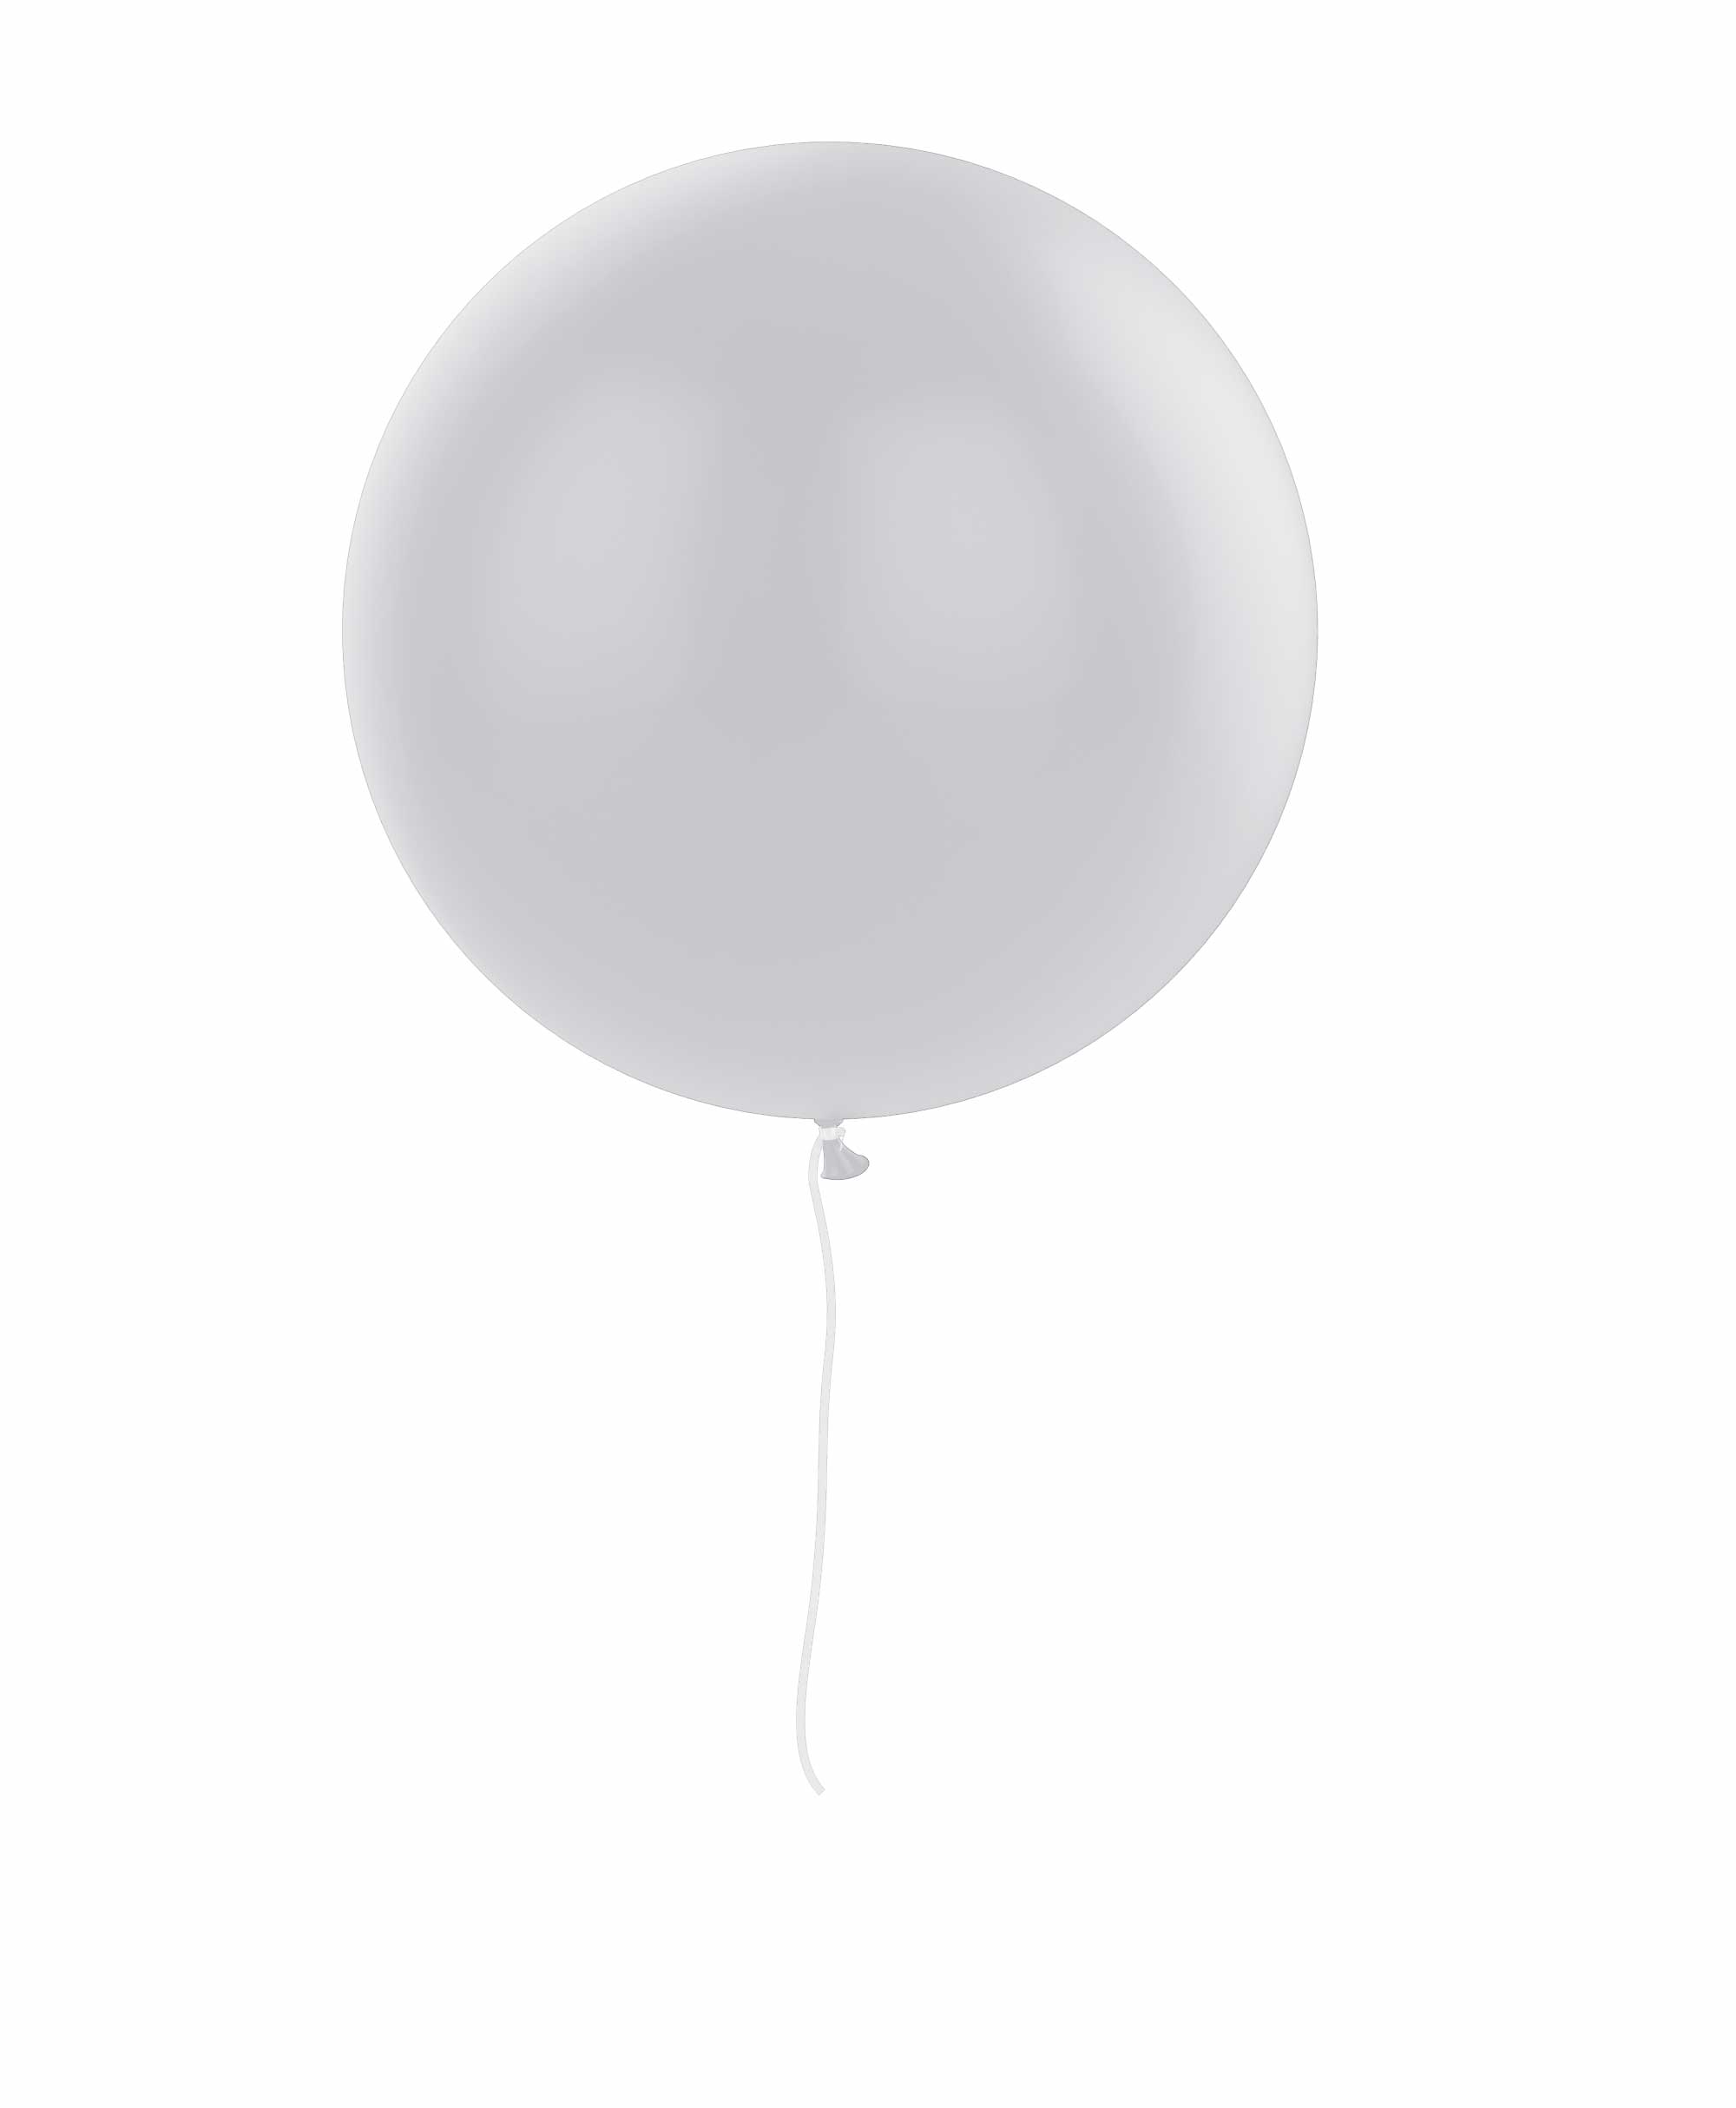 Grey balloon 36" - Plum theme